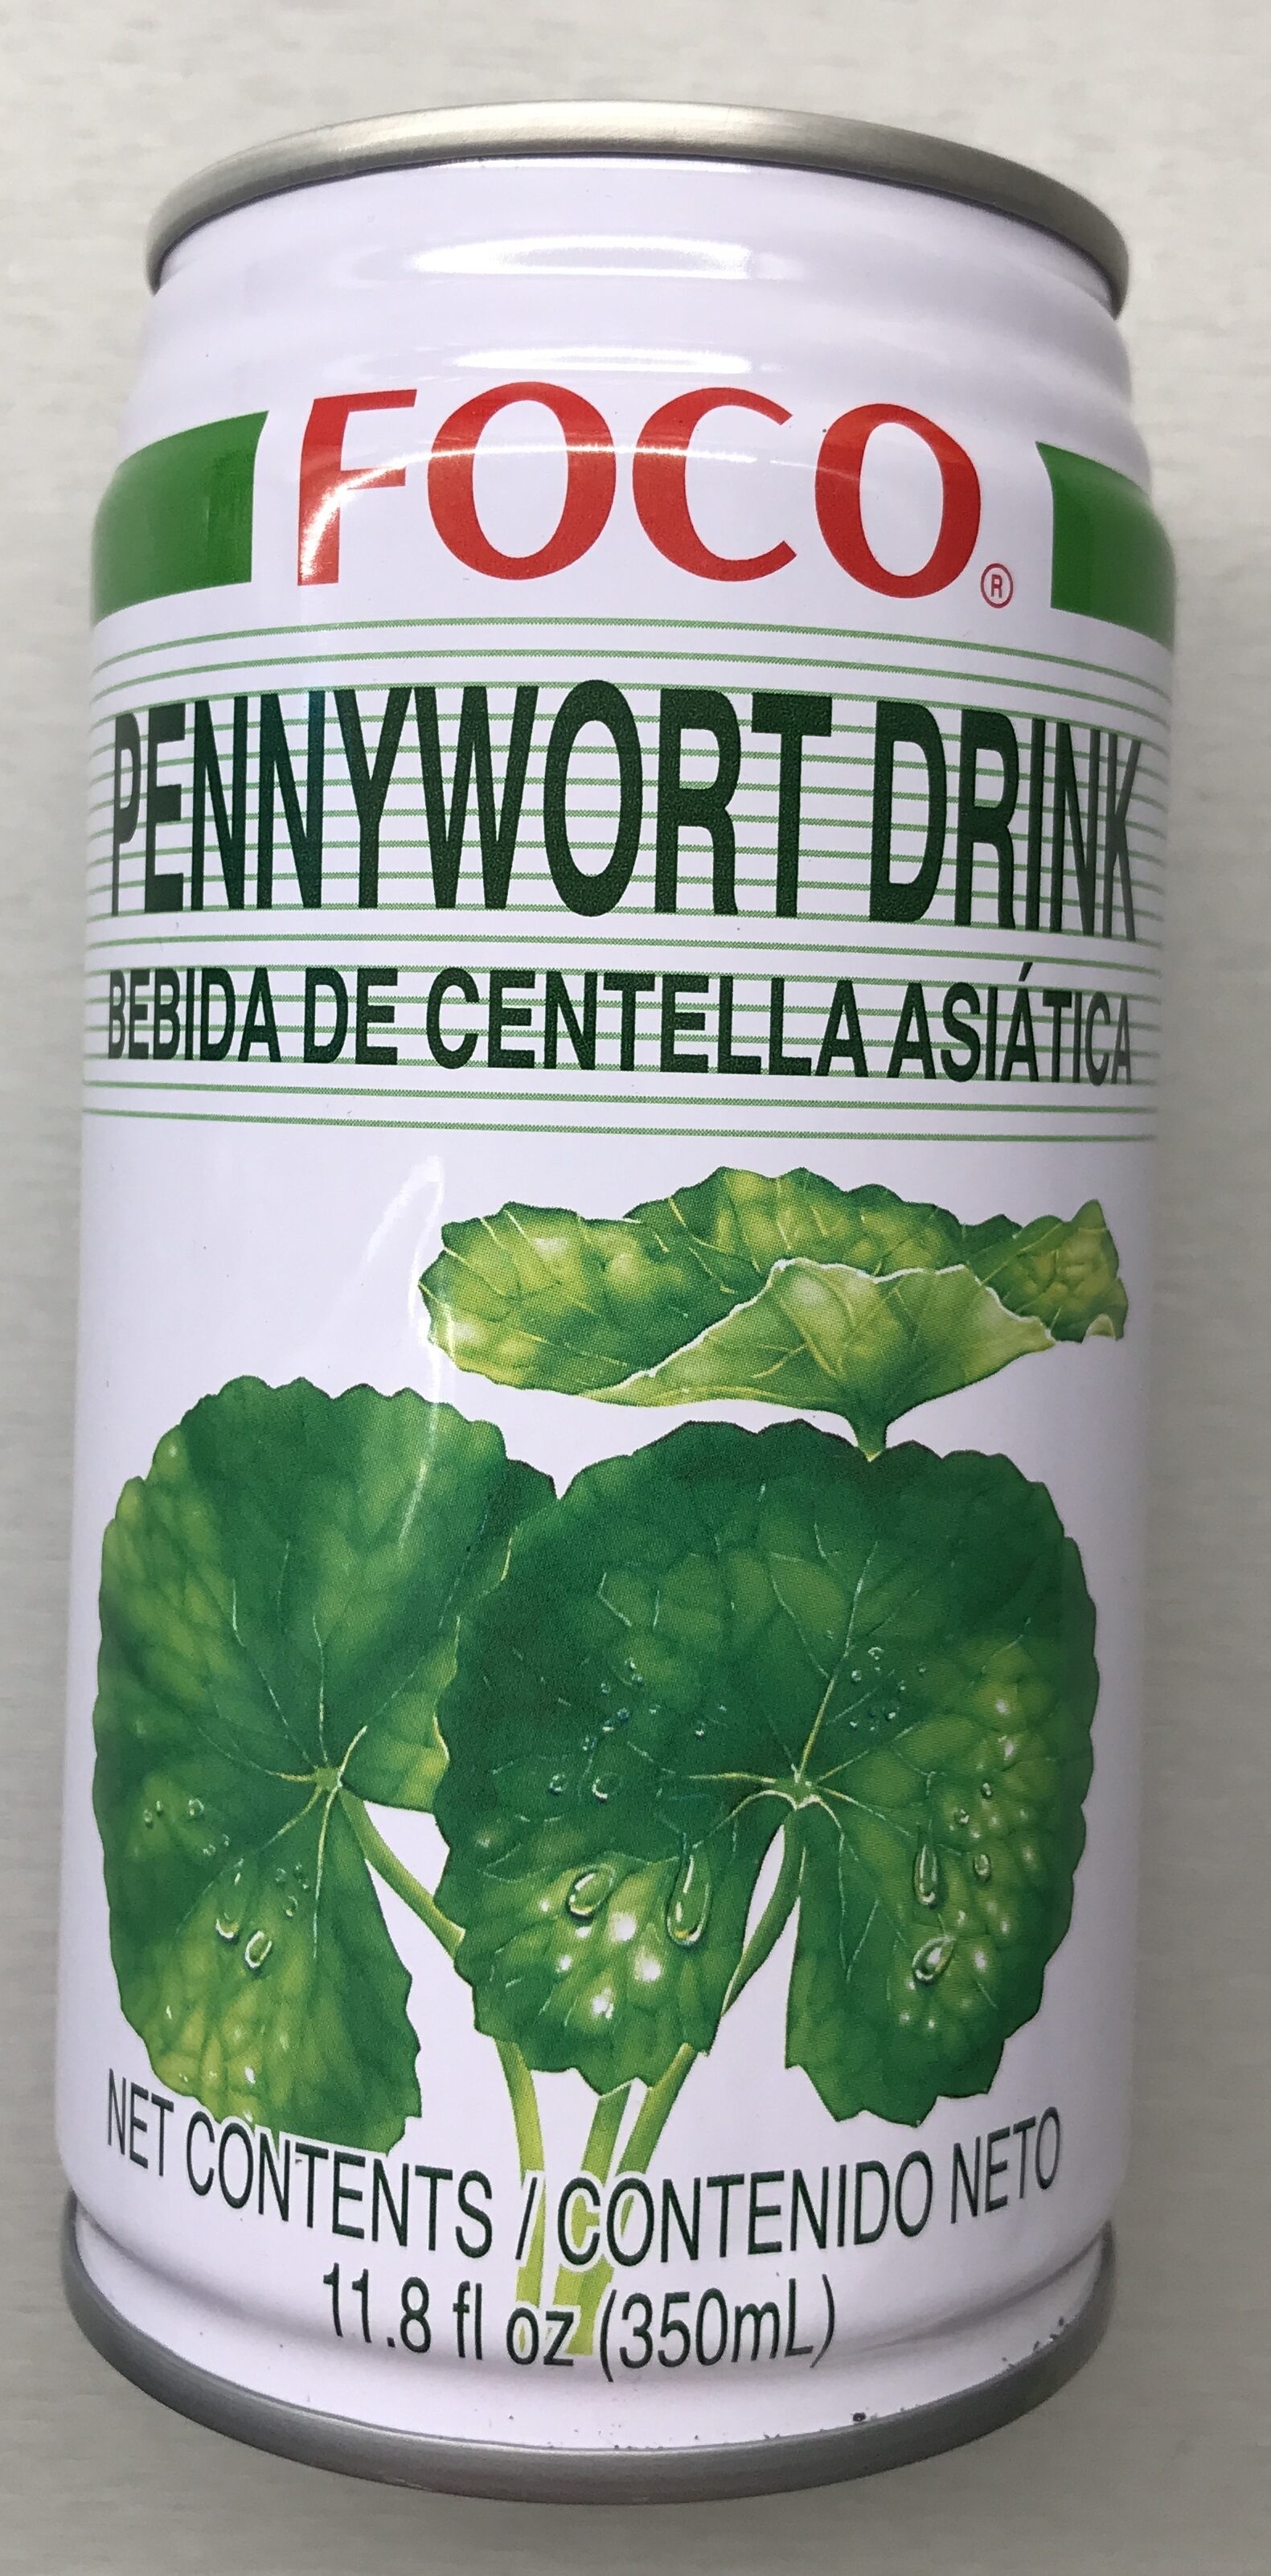 Pennywort Drink - Produkt - en